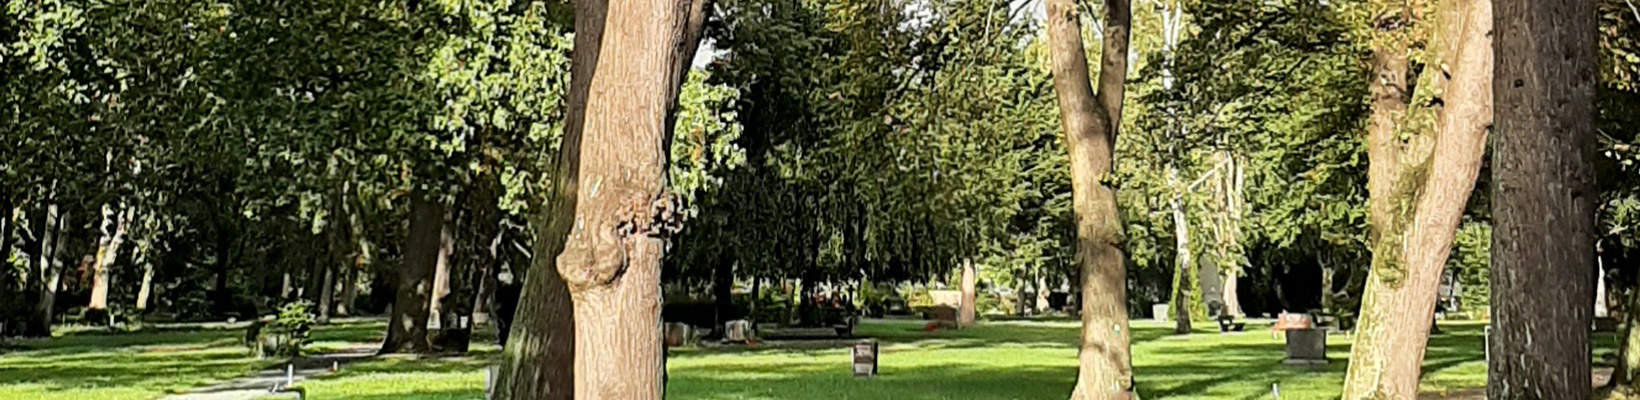 Friedhof Sophien III: Muslimisches Begräbnisfeld (© Friedhof Sophien III)